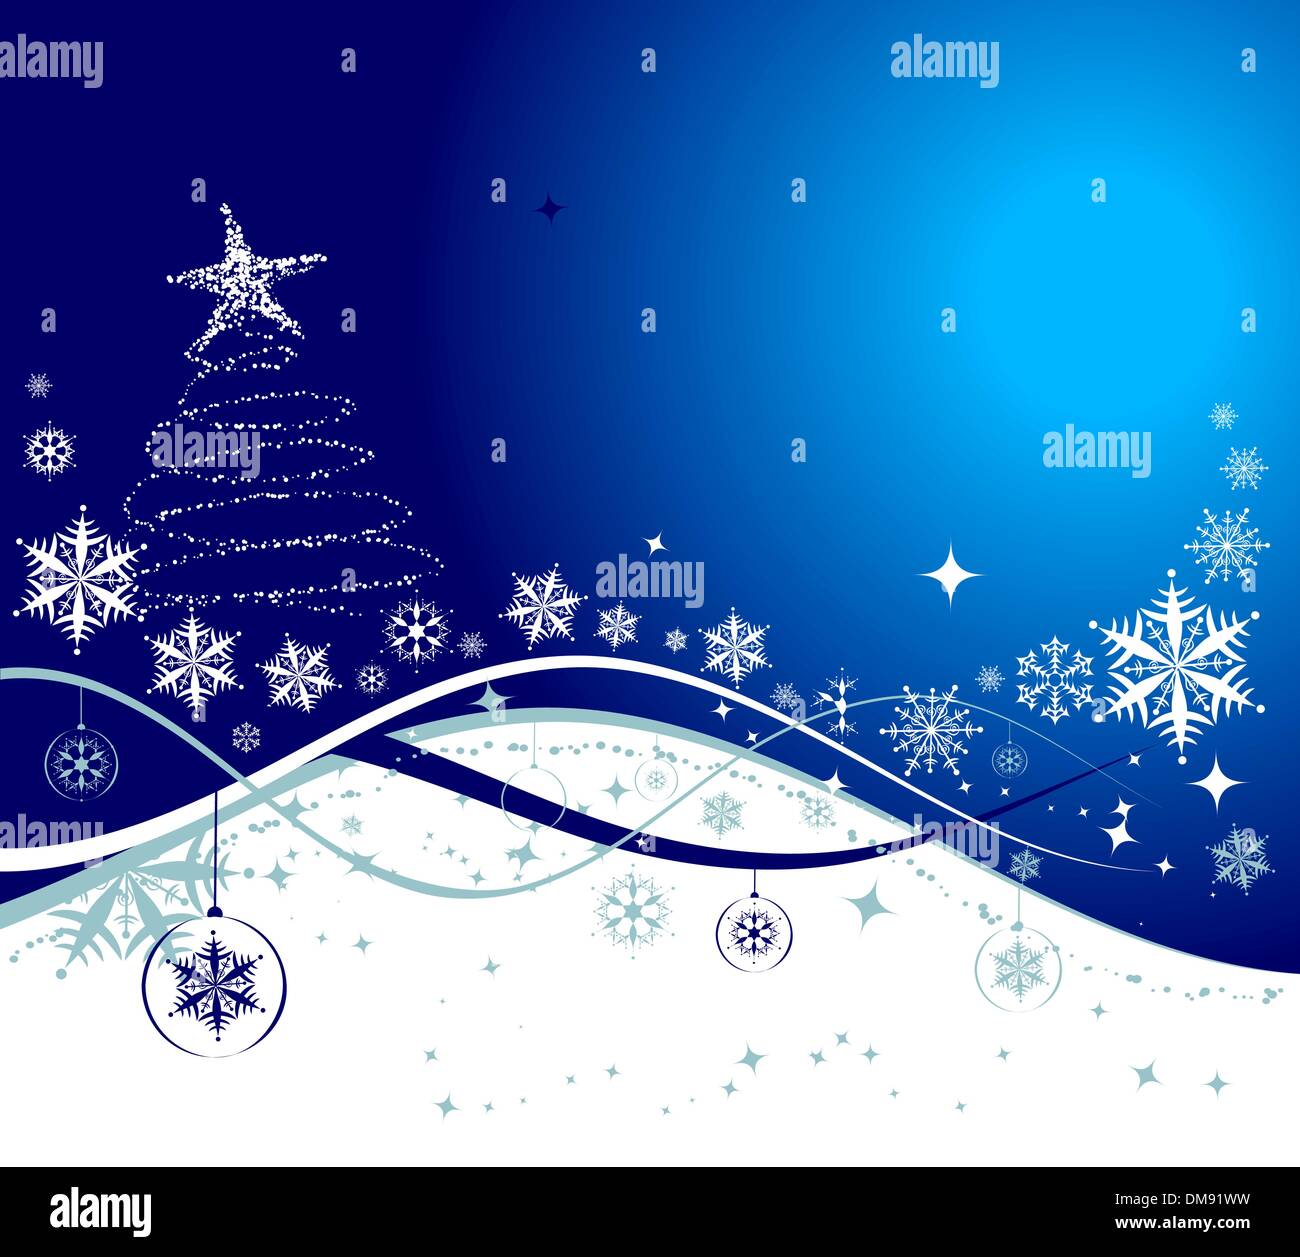 Weihnachten Urlaub Hintergrund, Vektor-Illustration für Ihr design Stock Vektor